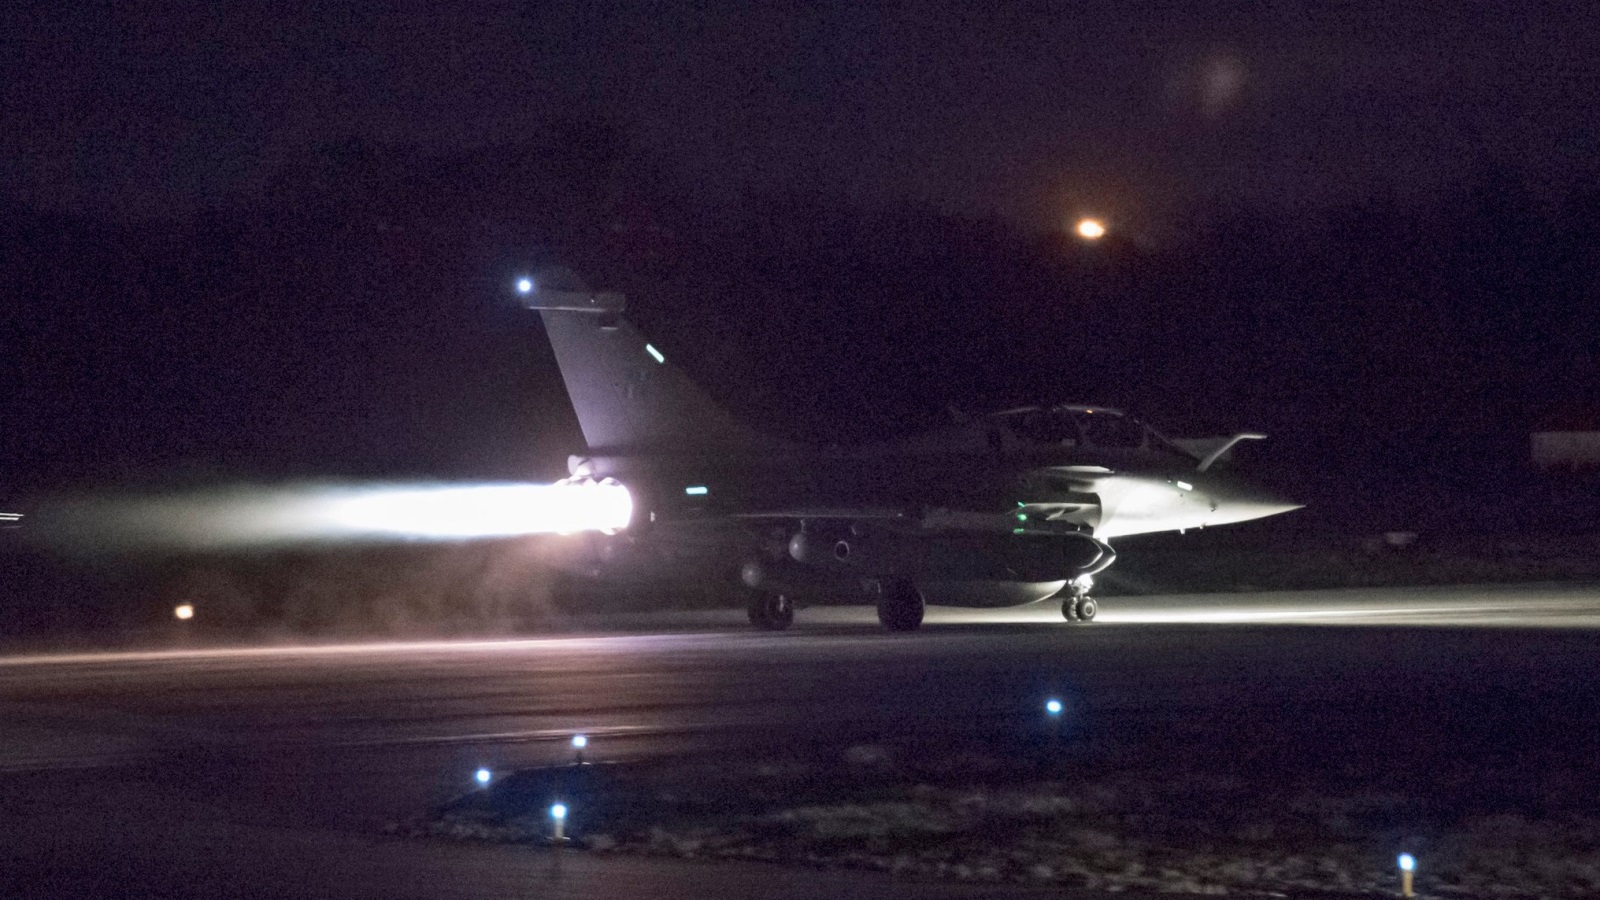 إحدى الطائرات تقلع للمشاركة في الضربة الأميركية البريطانية الفرنسية على مواقع تابعة للنظام في سوريا فجر السبت 14 أبريل/نيسان 2018 (رويترز)